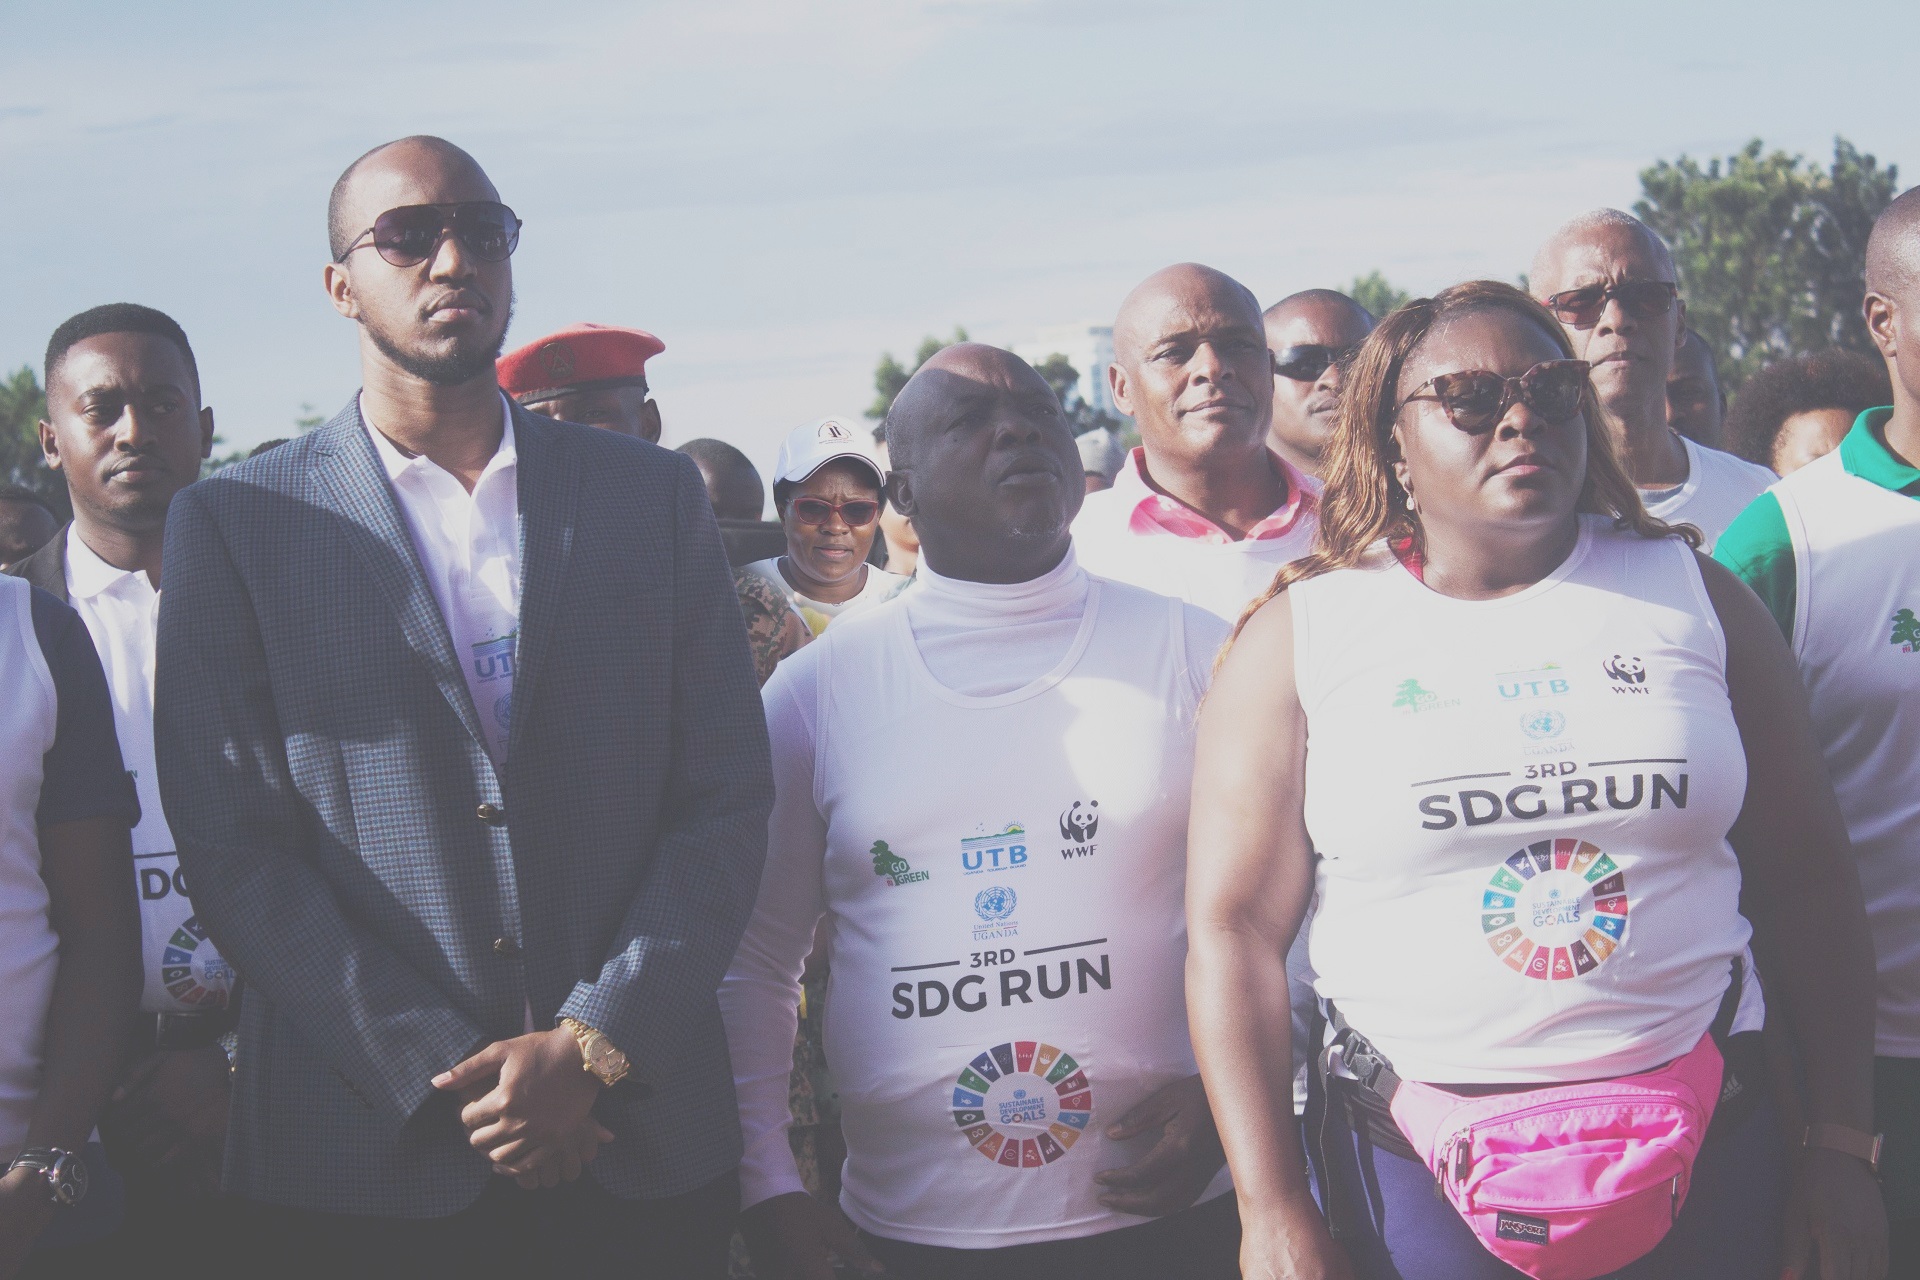 DII At SDG Run 2019